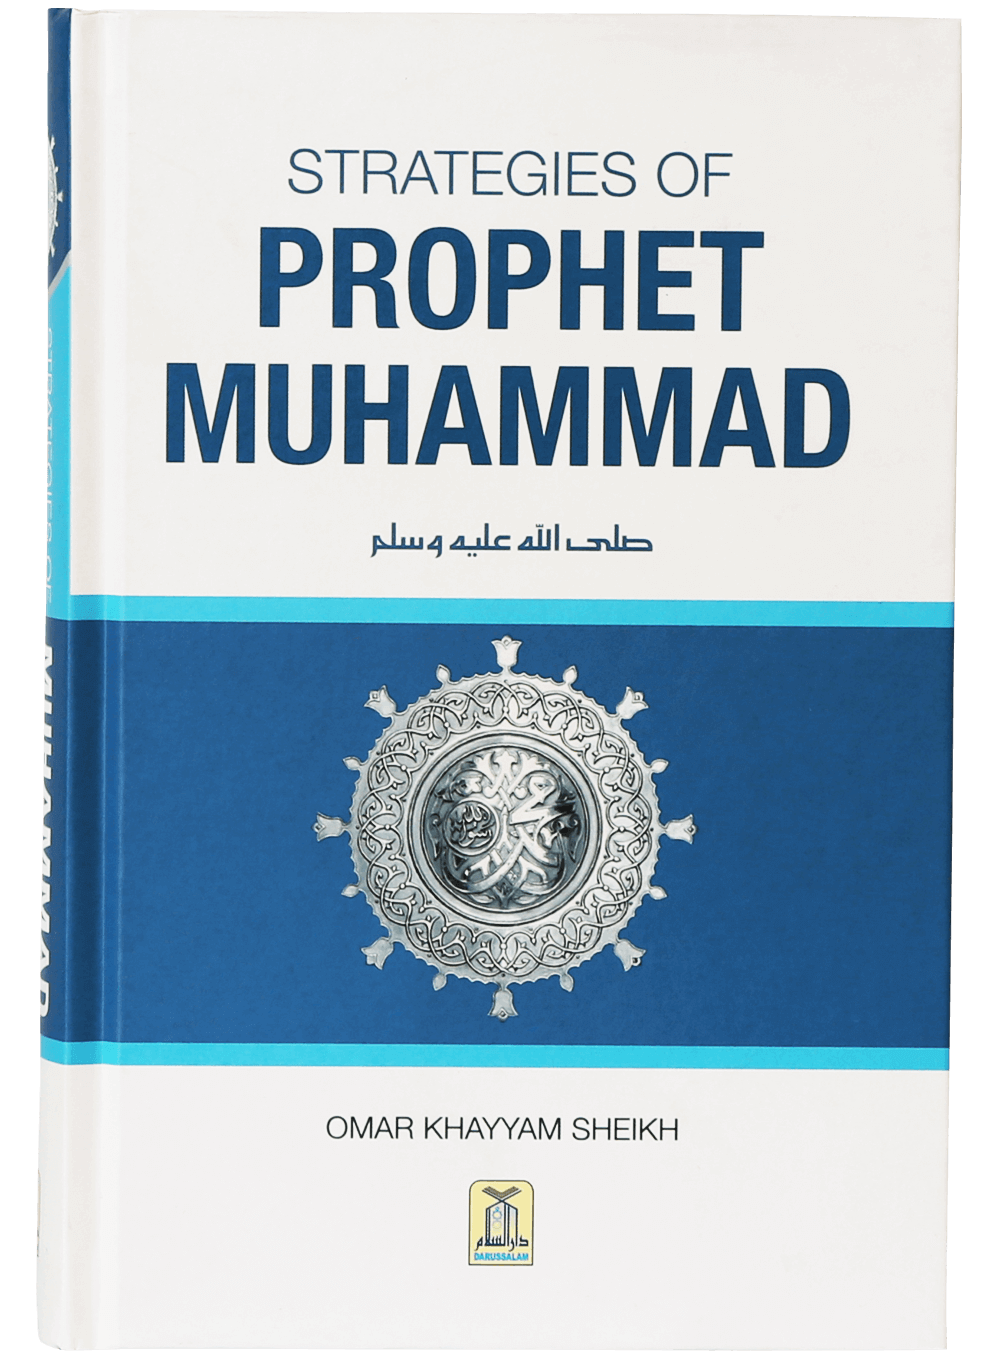 darussalam-2017-11-01-10-30-51strategies-of-prophet-muhammad-1